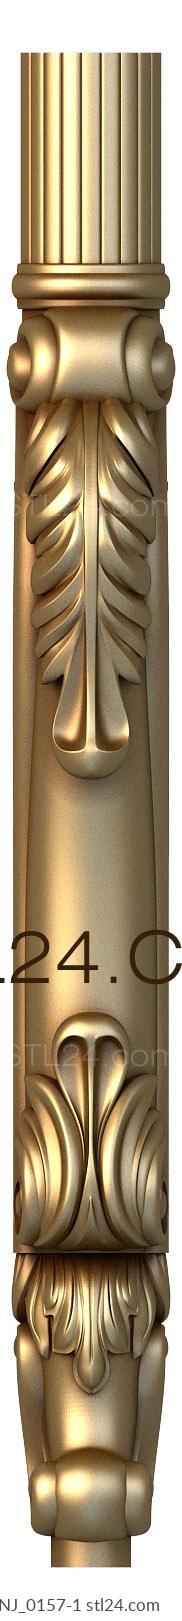 Ножки (NJ_0157-1) 3D модель для ЧПУ станка